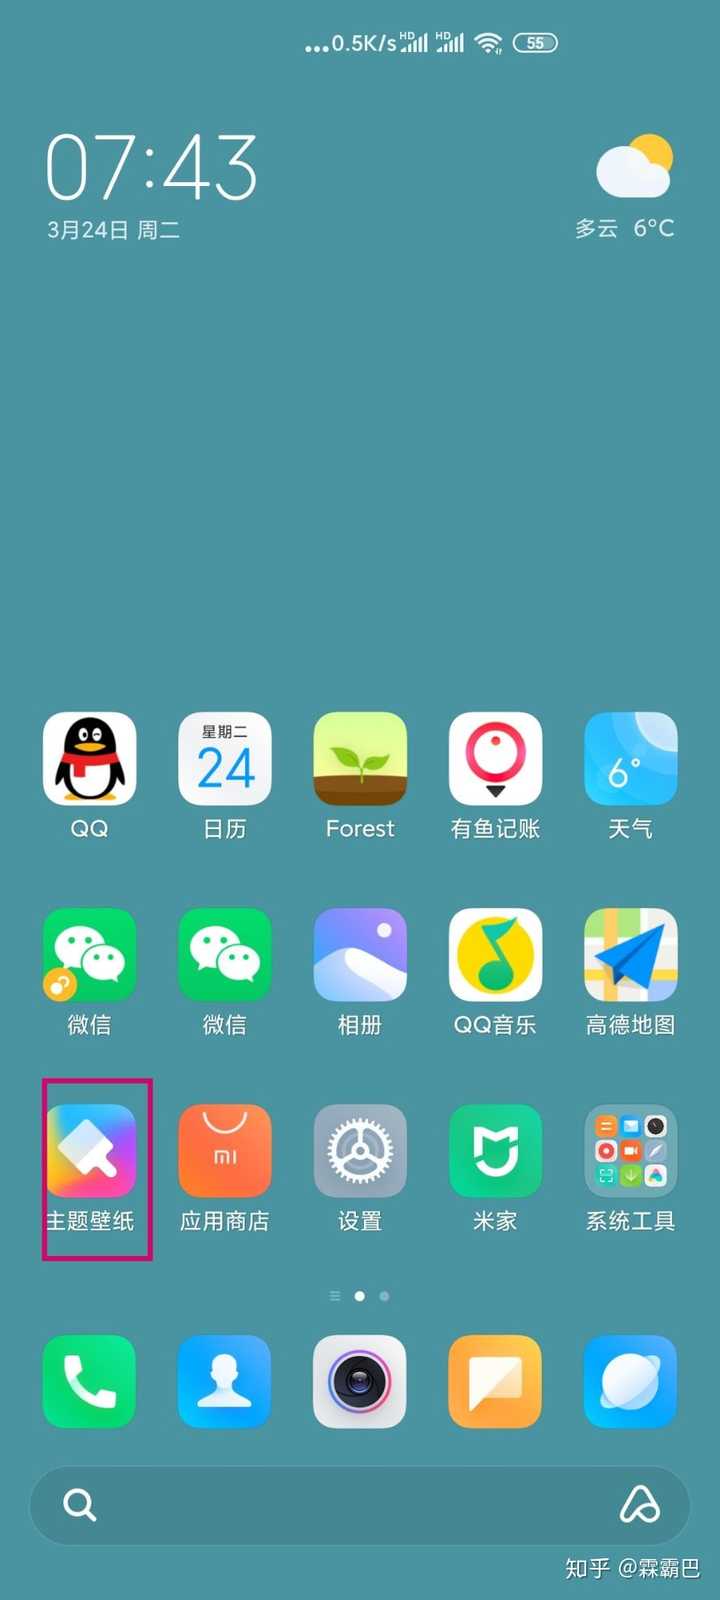 最新miui的主题app叫"主题壁纸"图标如图,如果手机里面找不到,可以去